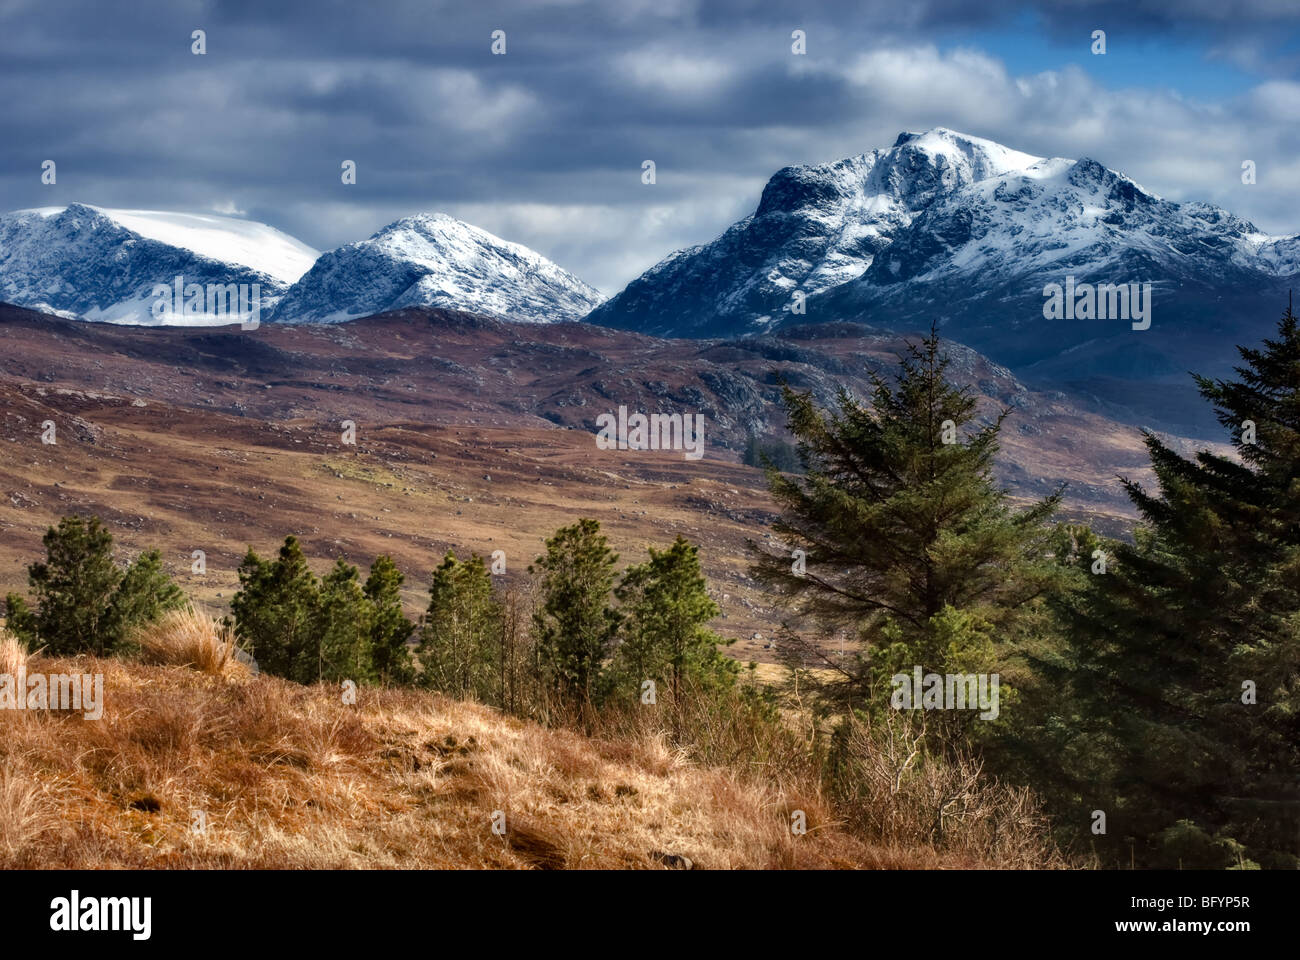 Verschneiten Berg-Szene nur Oustide Poolewe auf A832 mit Blick auf Berge, die Loch Maree in Schottland flankieren entnommen Stockfoto